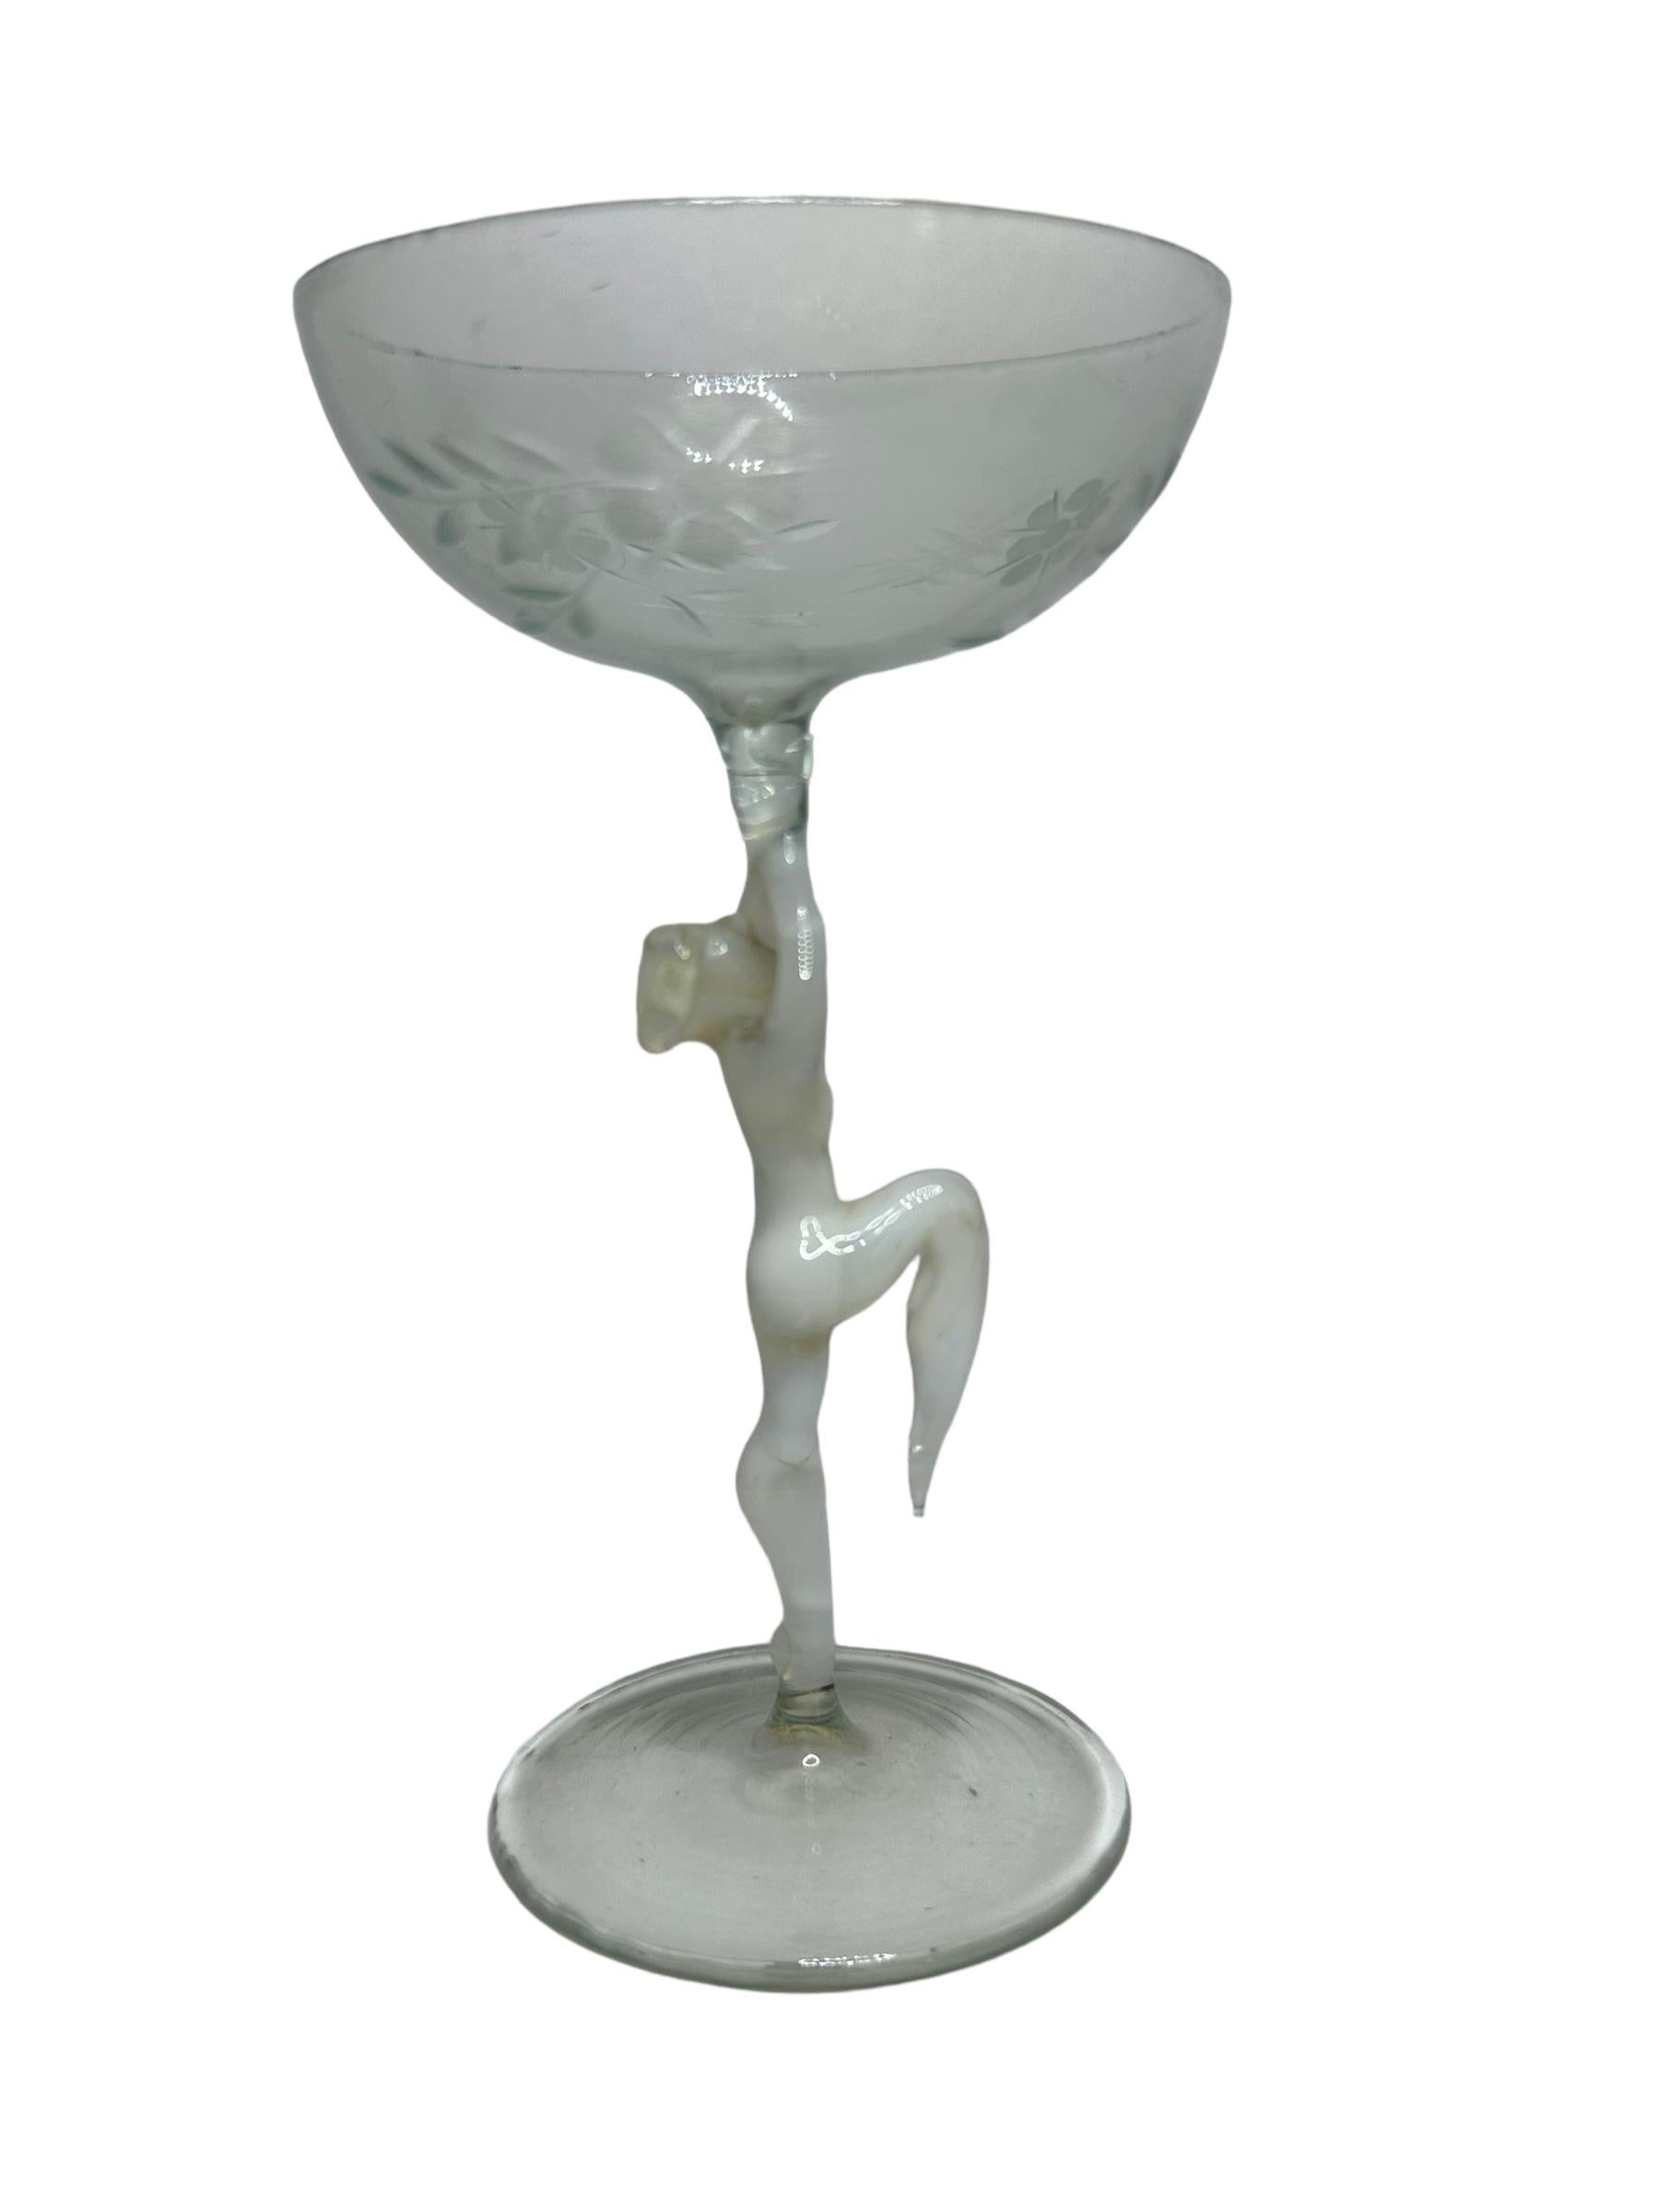 Il s'agit d'un magnifique verre à liqueur millésimé à pied, provenant d'Autriche. Il est doté d'un manche de femme nu et d'un style artistique Bimini. Le verre a un design magnifique, le pied représente une femme nue de couleur blanche. La base et